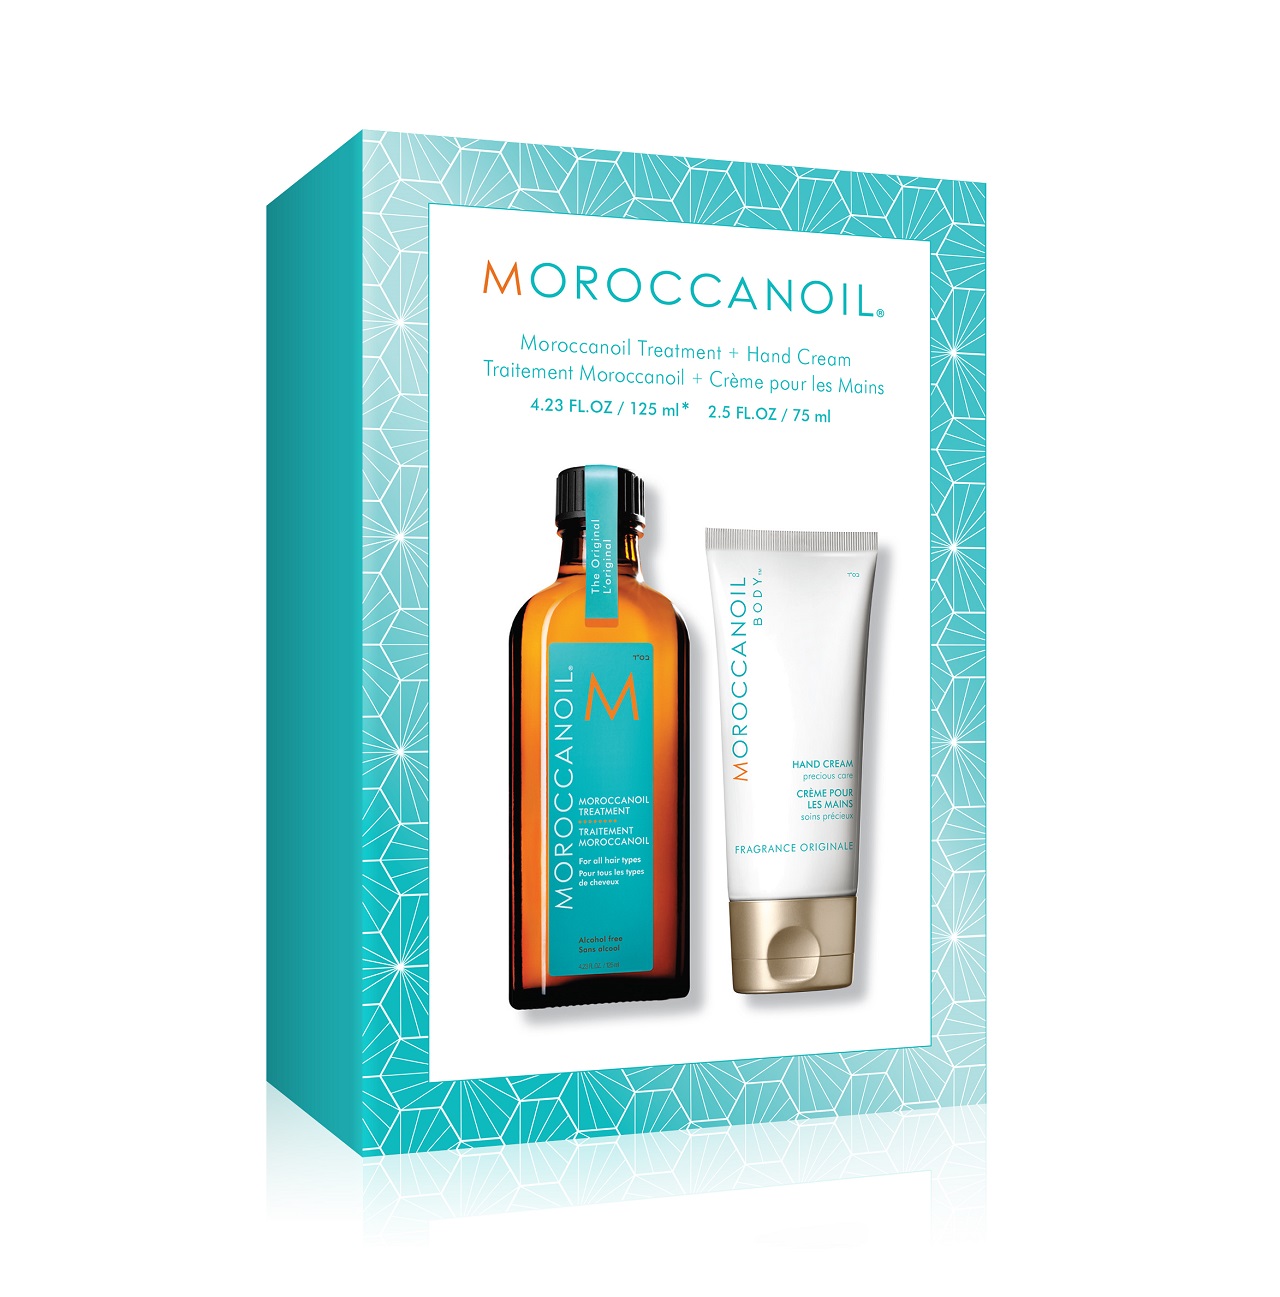 Moroccanoil משיקה ערכה המכילה שמן טיפולי וקרם ידיים מחיר 189שח צילום יחצ...